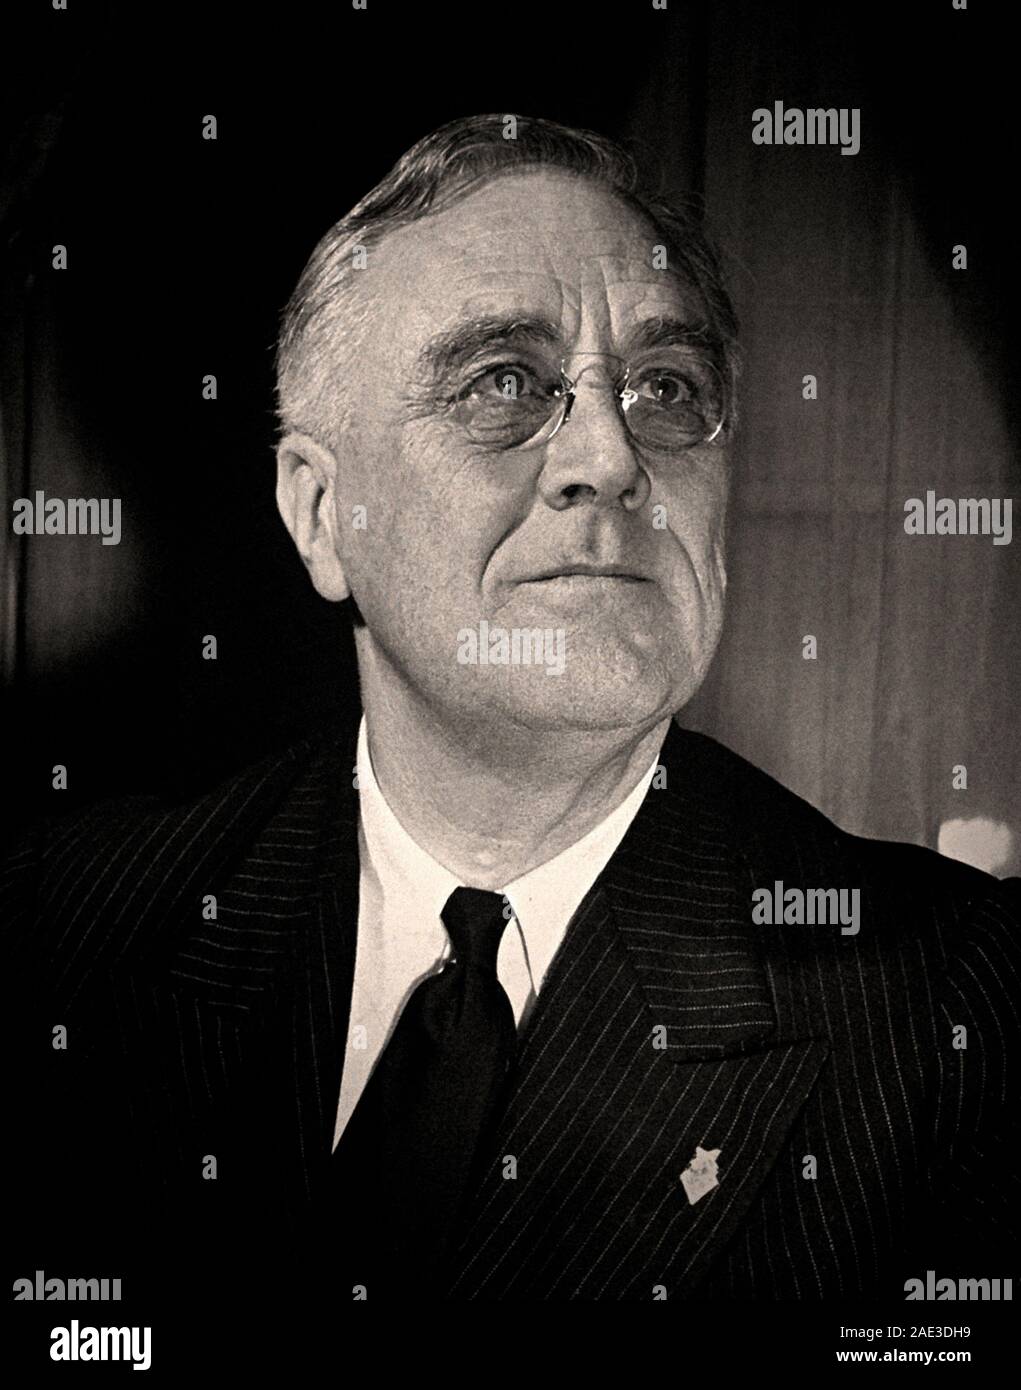 Ritratto di Franklin Delano Roosevelt (1882 - 1945) era un americano di statista e leader politico che ha servito come il trentaduesimo presidente degli Stati Uniti. Foto Stock